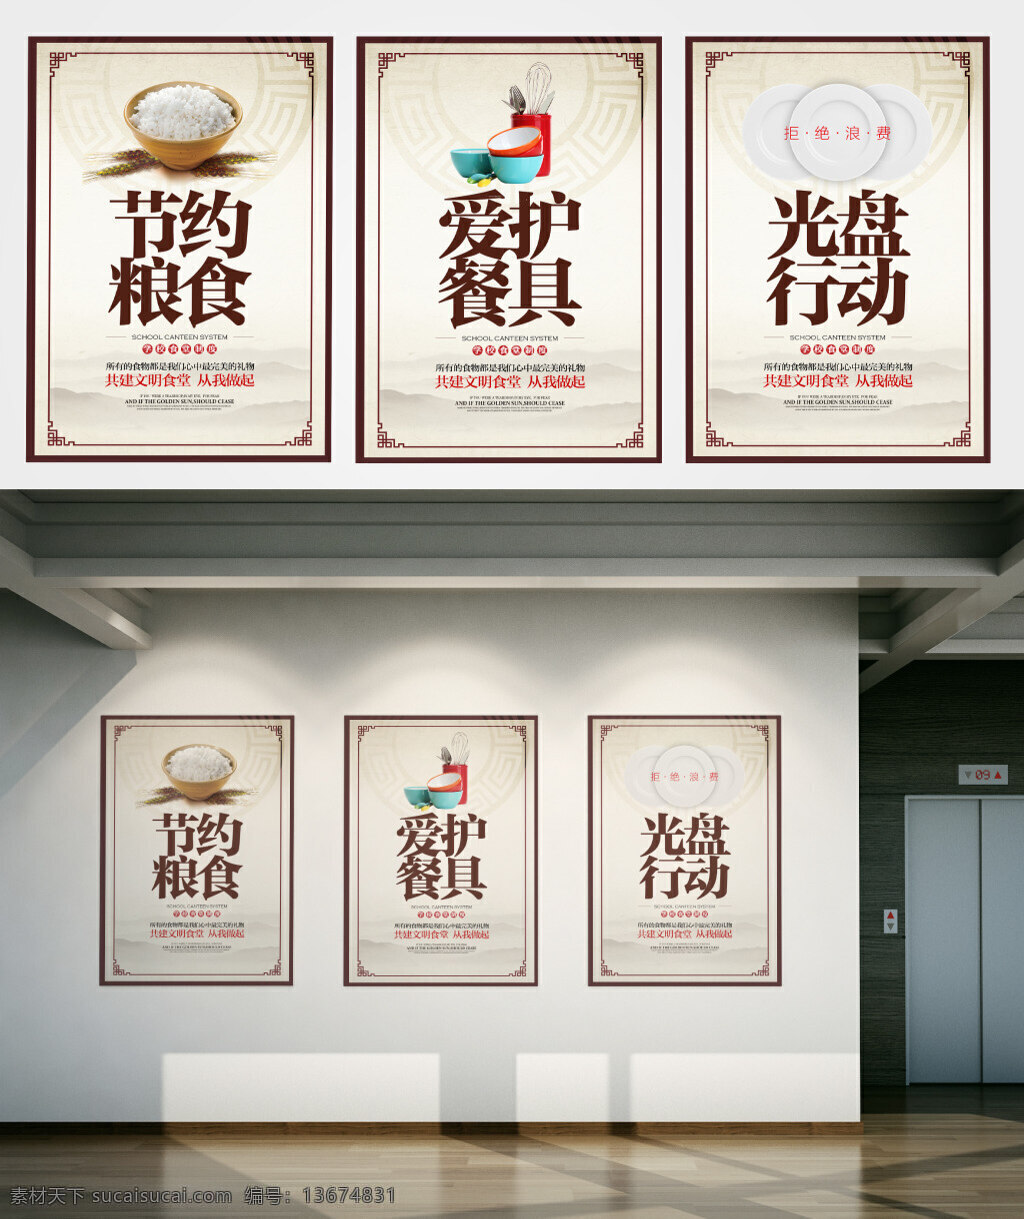 校园 食堂 文化 中国 风 公益 宣传 展板 海报 学校 餐厅 中国风 水墨